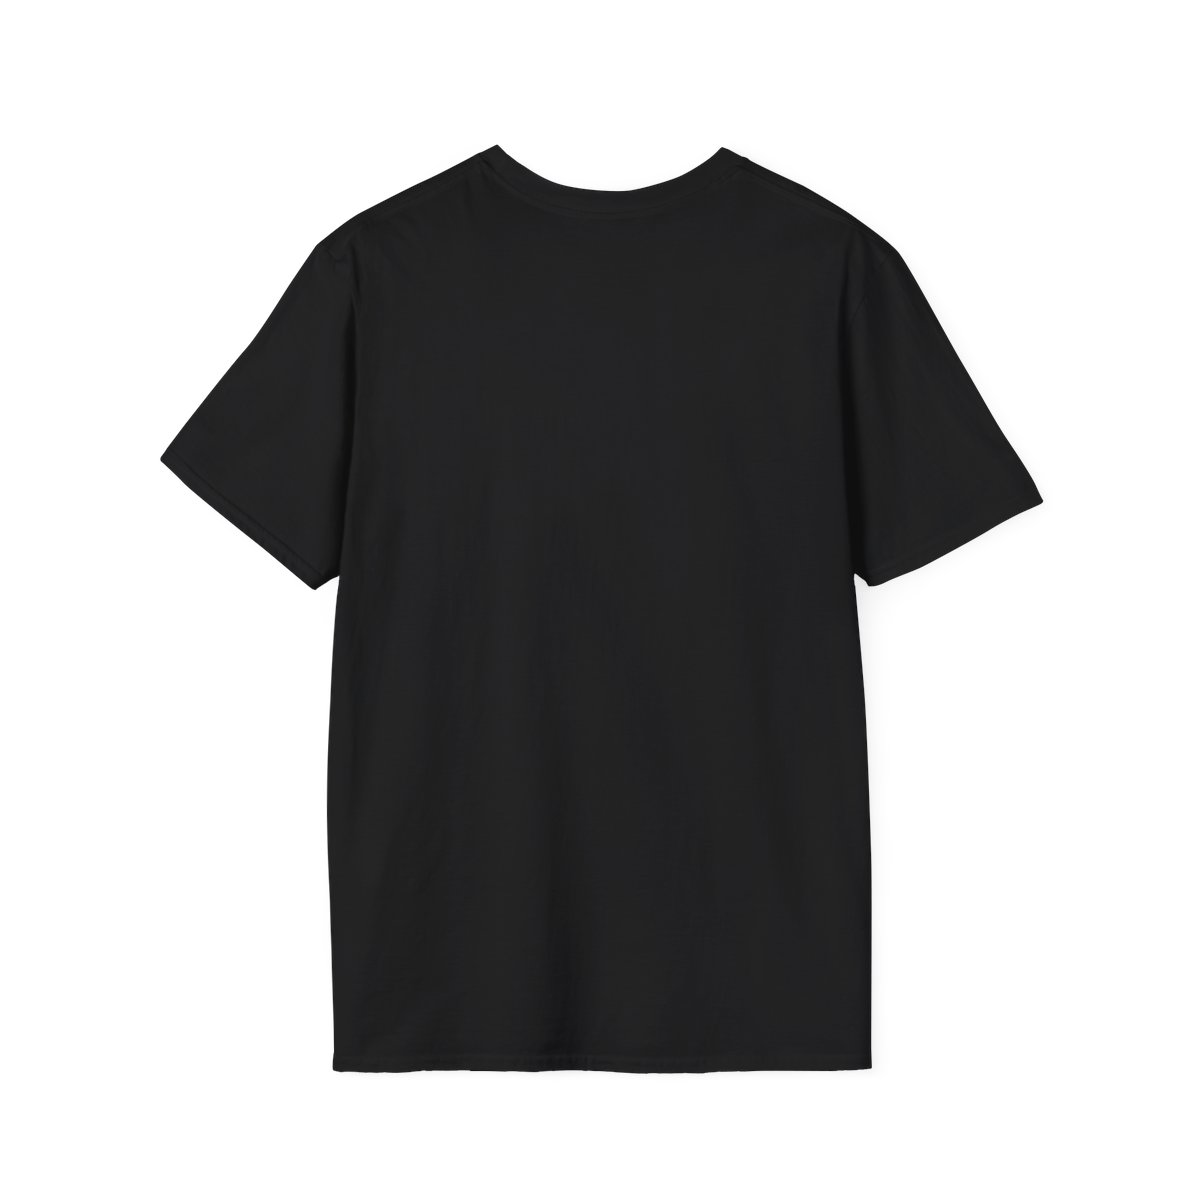 "Falafel Love" Unisex Softstyle T-Shirt product thumbnail image